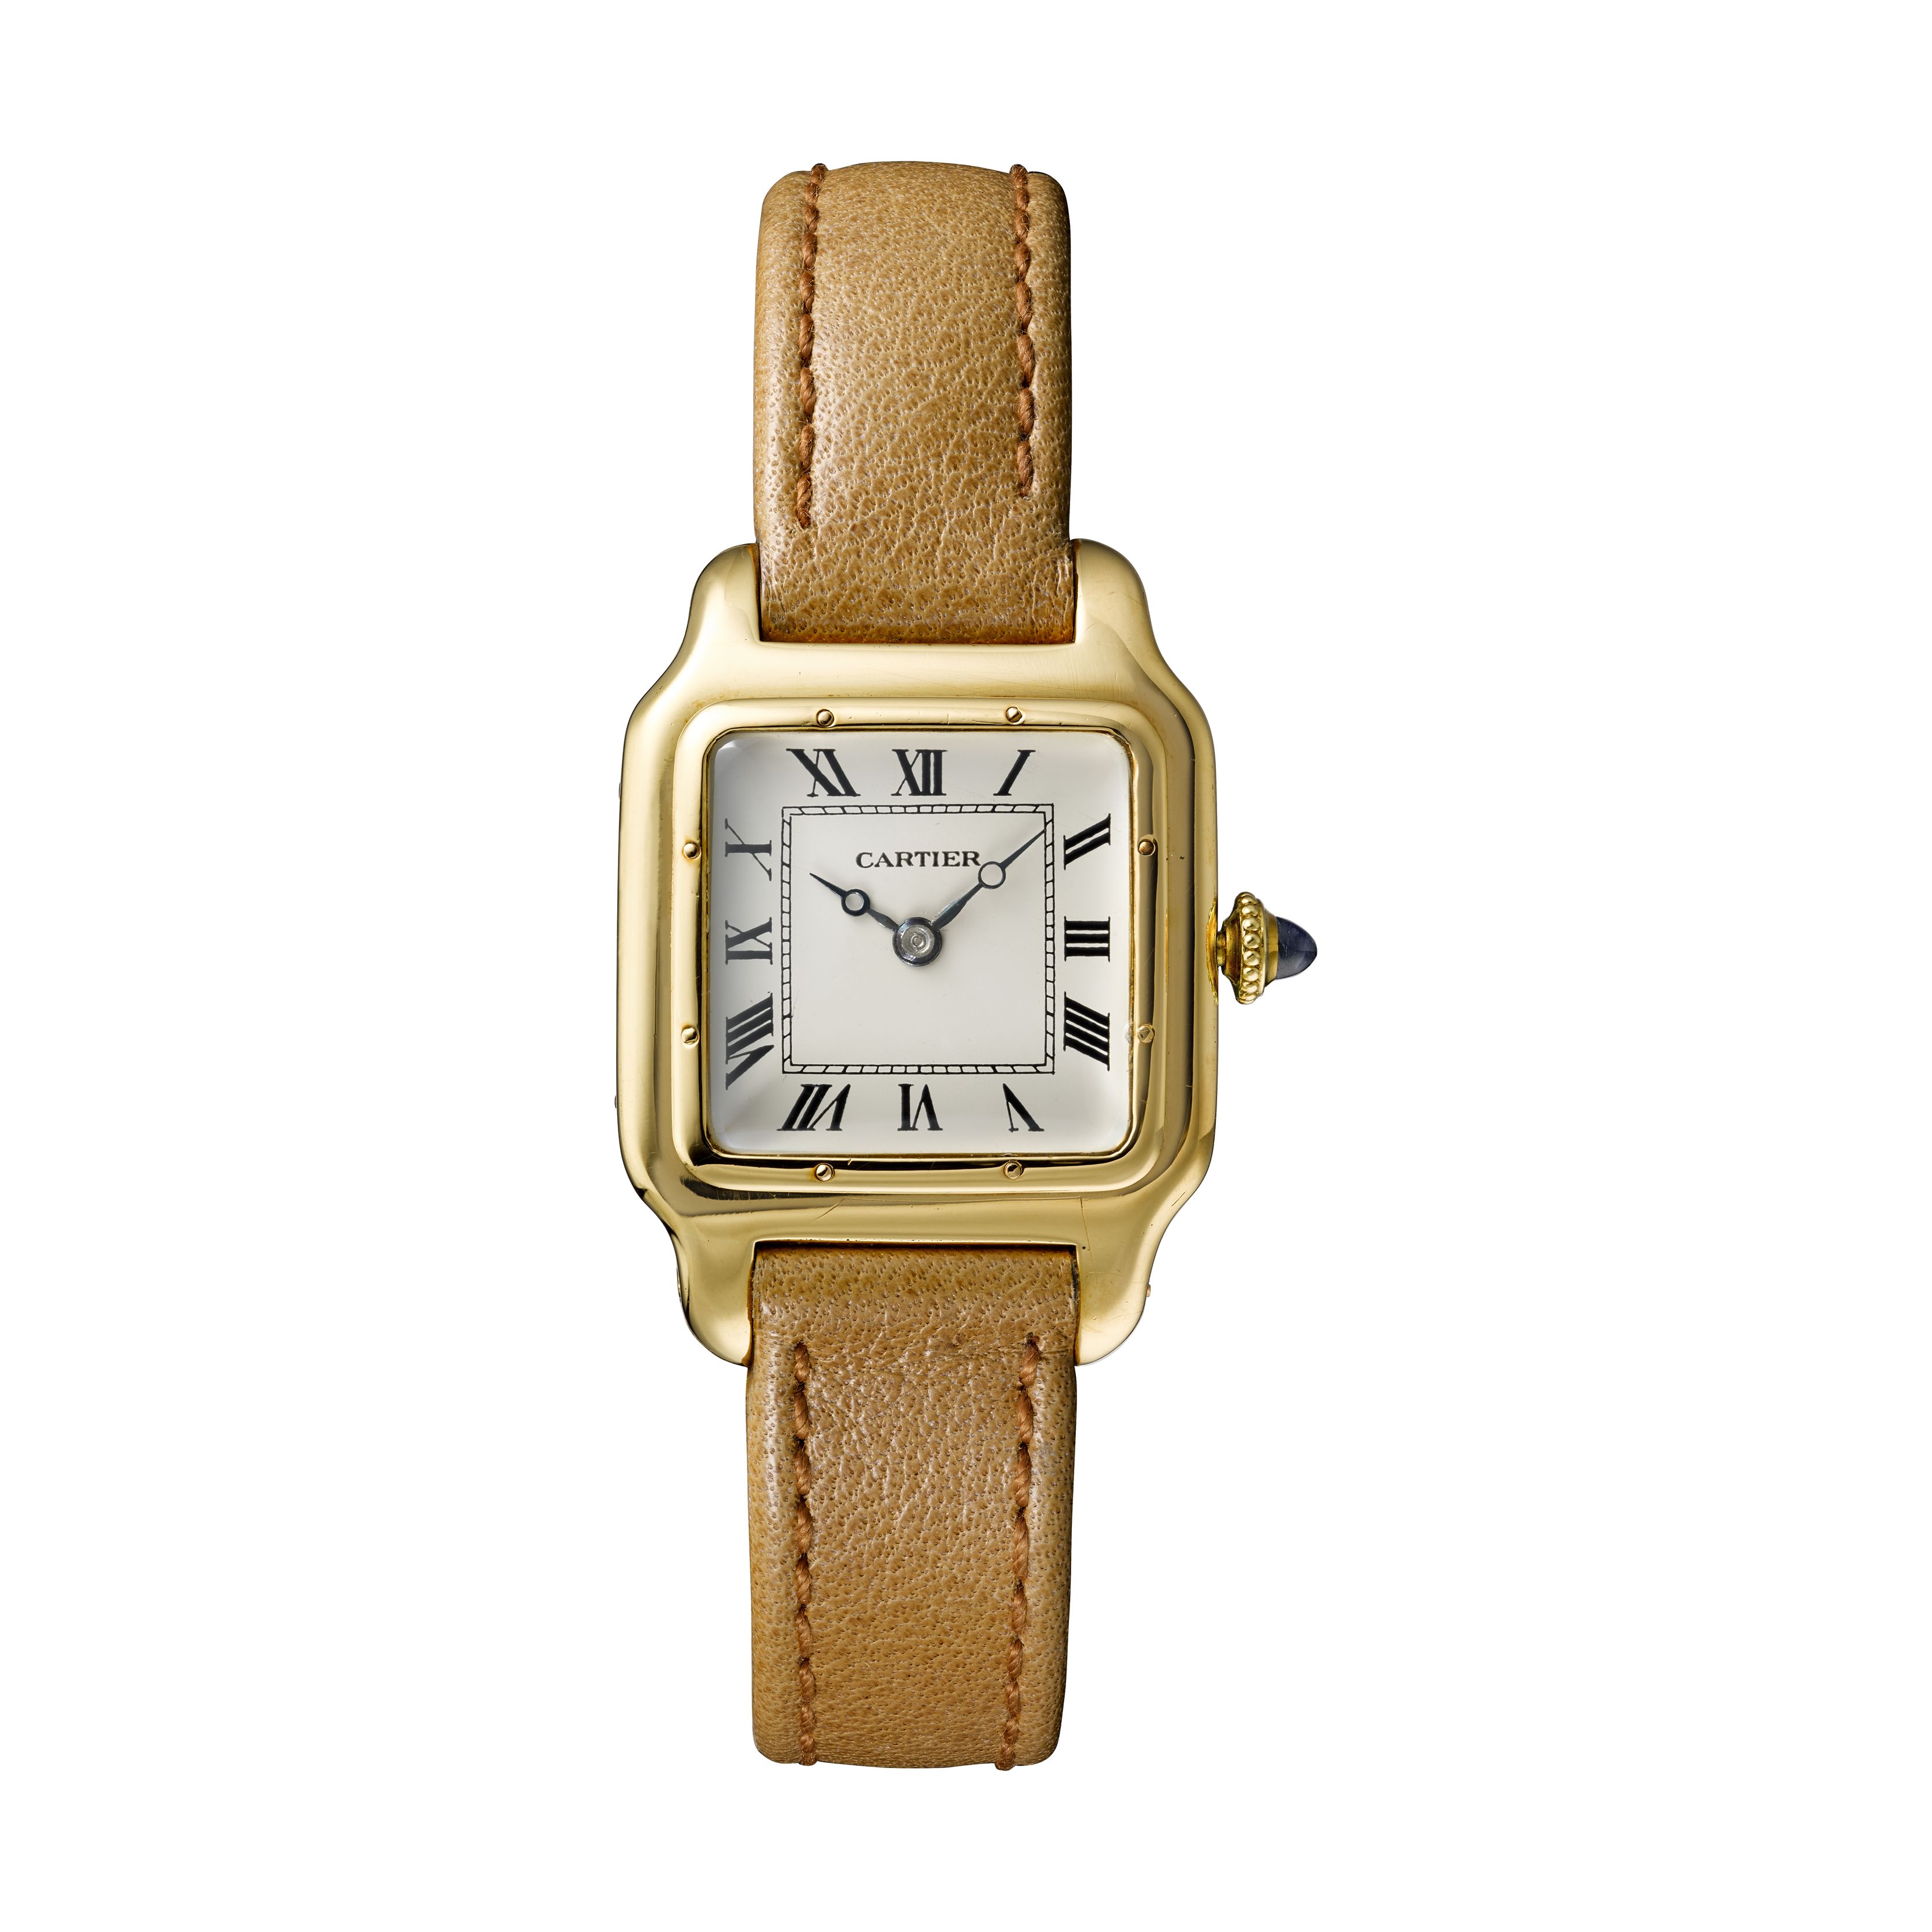 Наручные часы Santos-Dumont Cartier